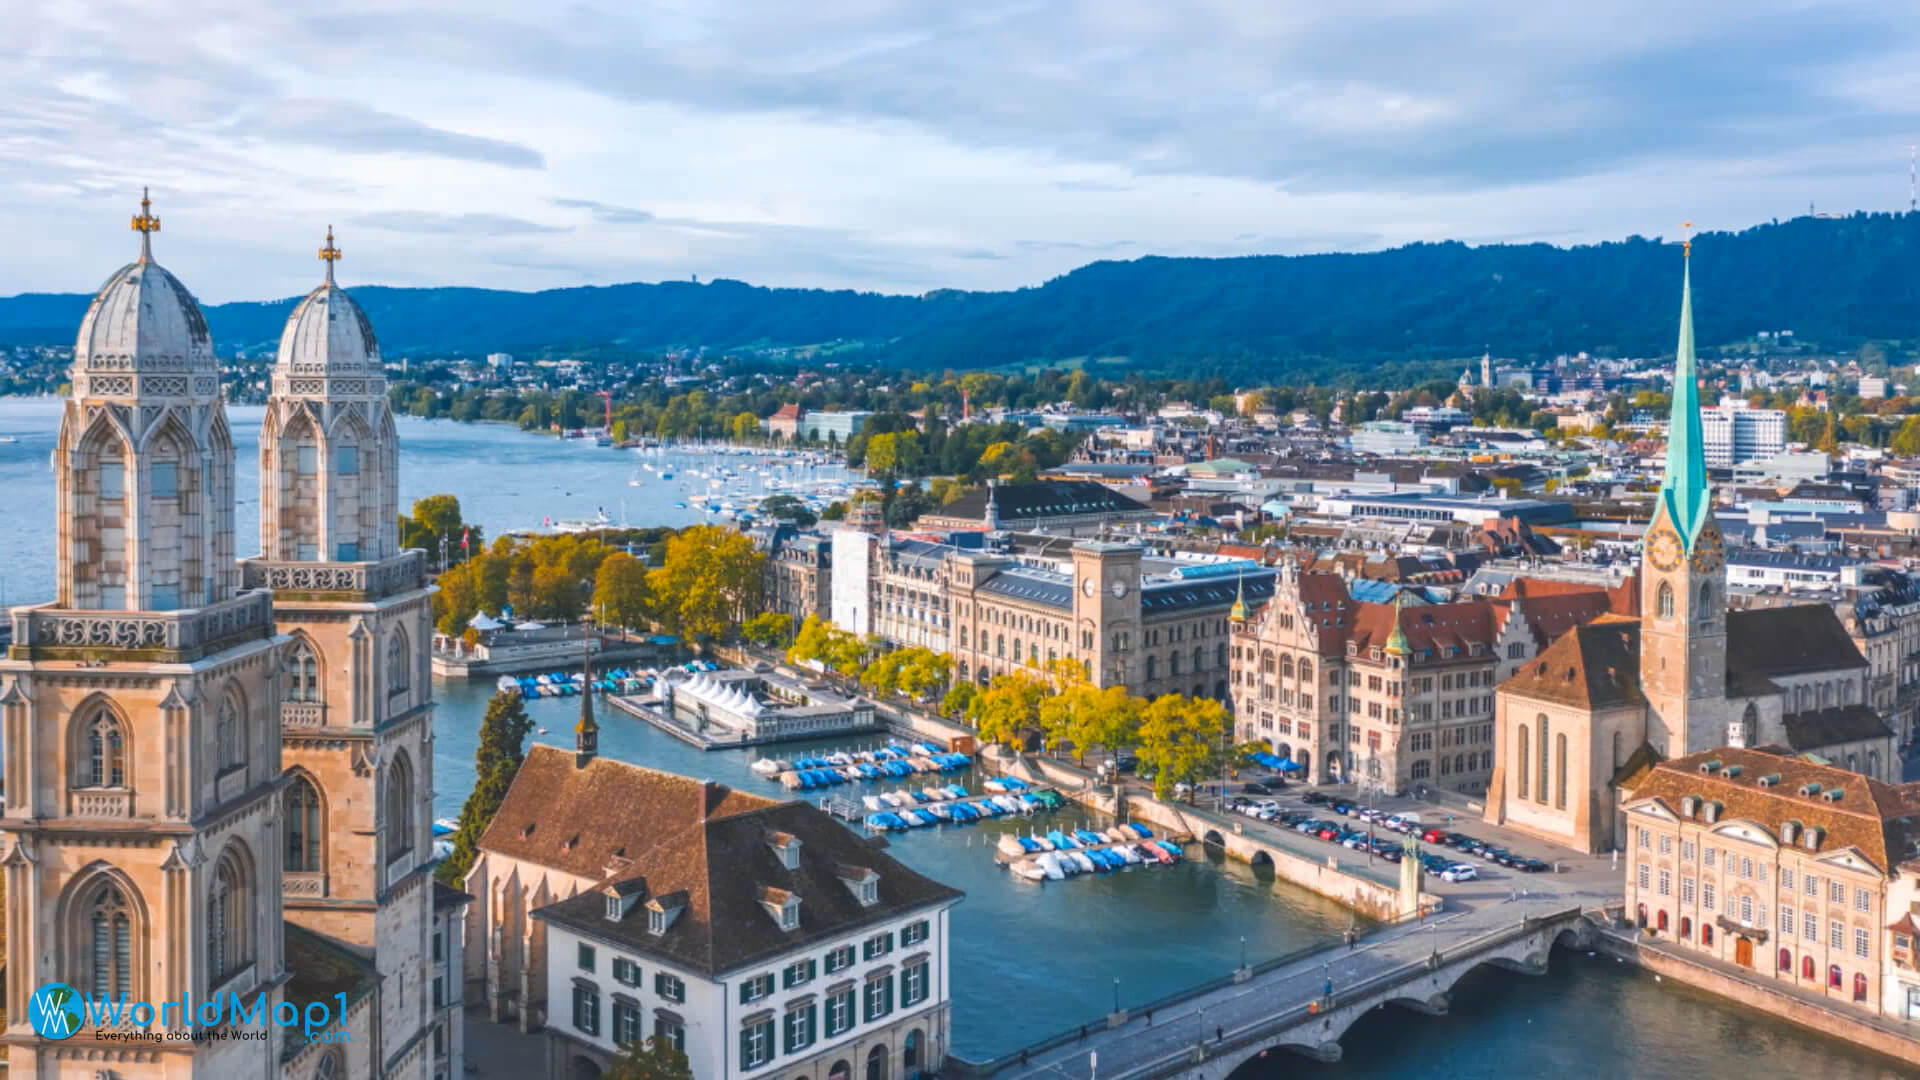 Tourist Attractions in Zurich